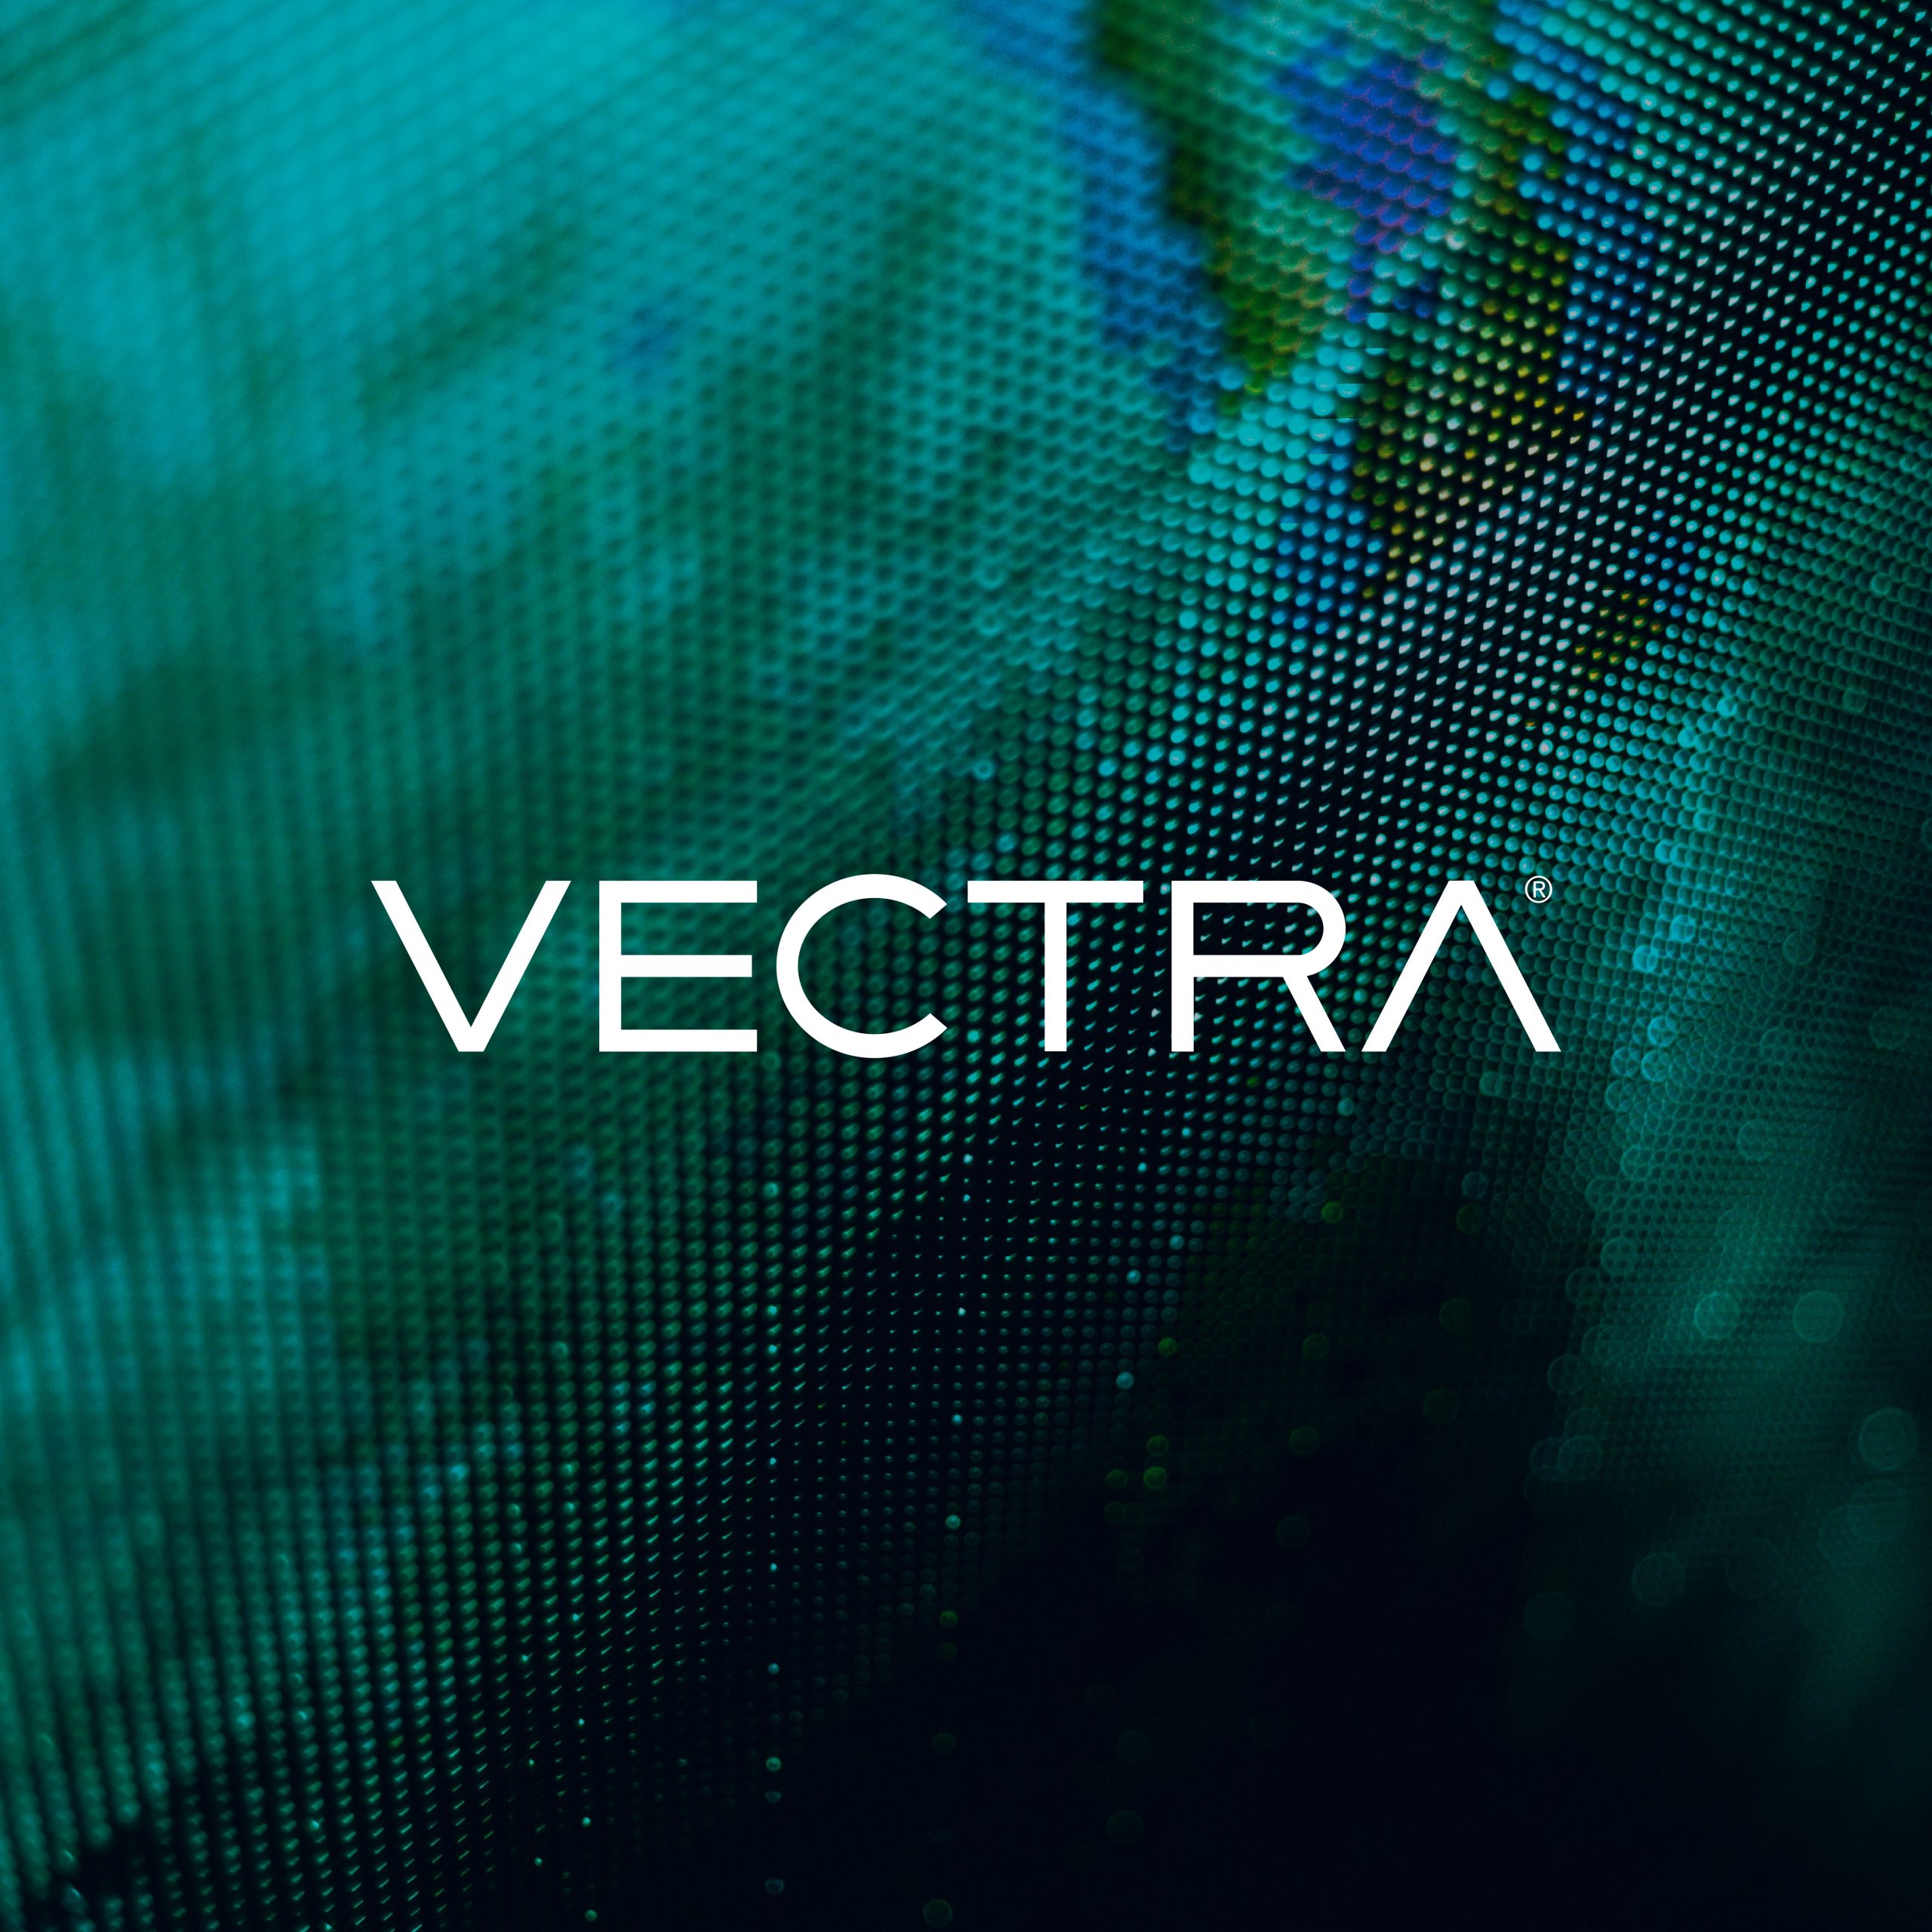 Fond vert symbolisant un écran d'ordinateur avec le logo VECTRA en surimpression